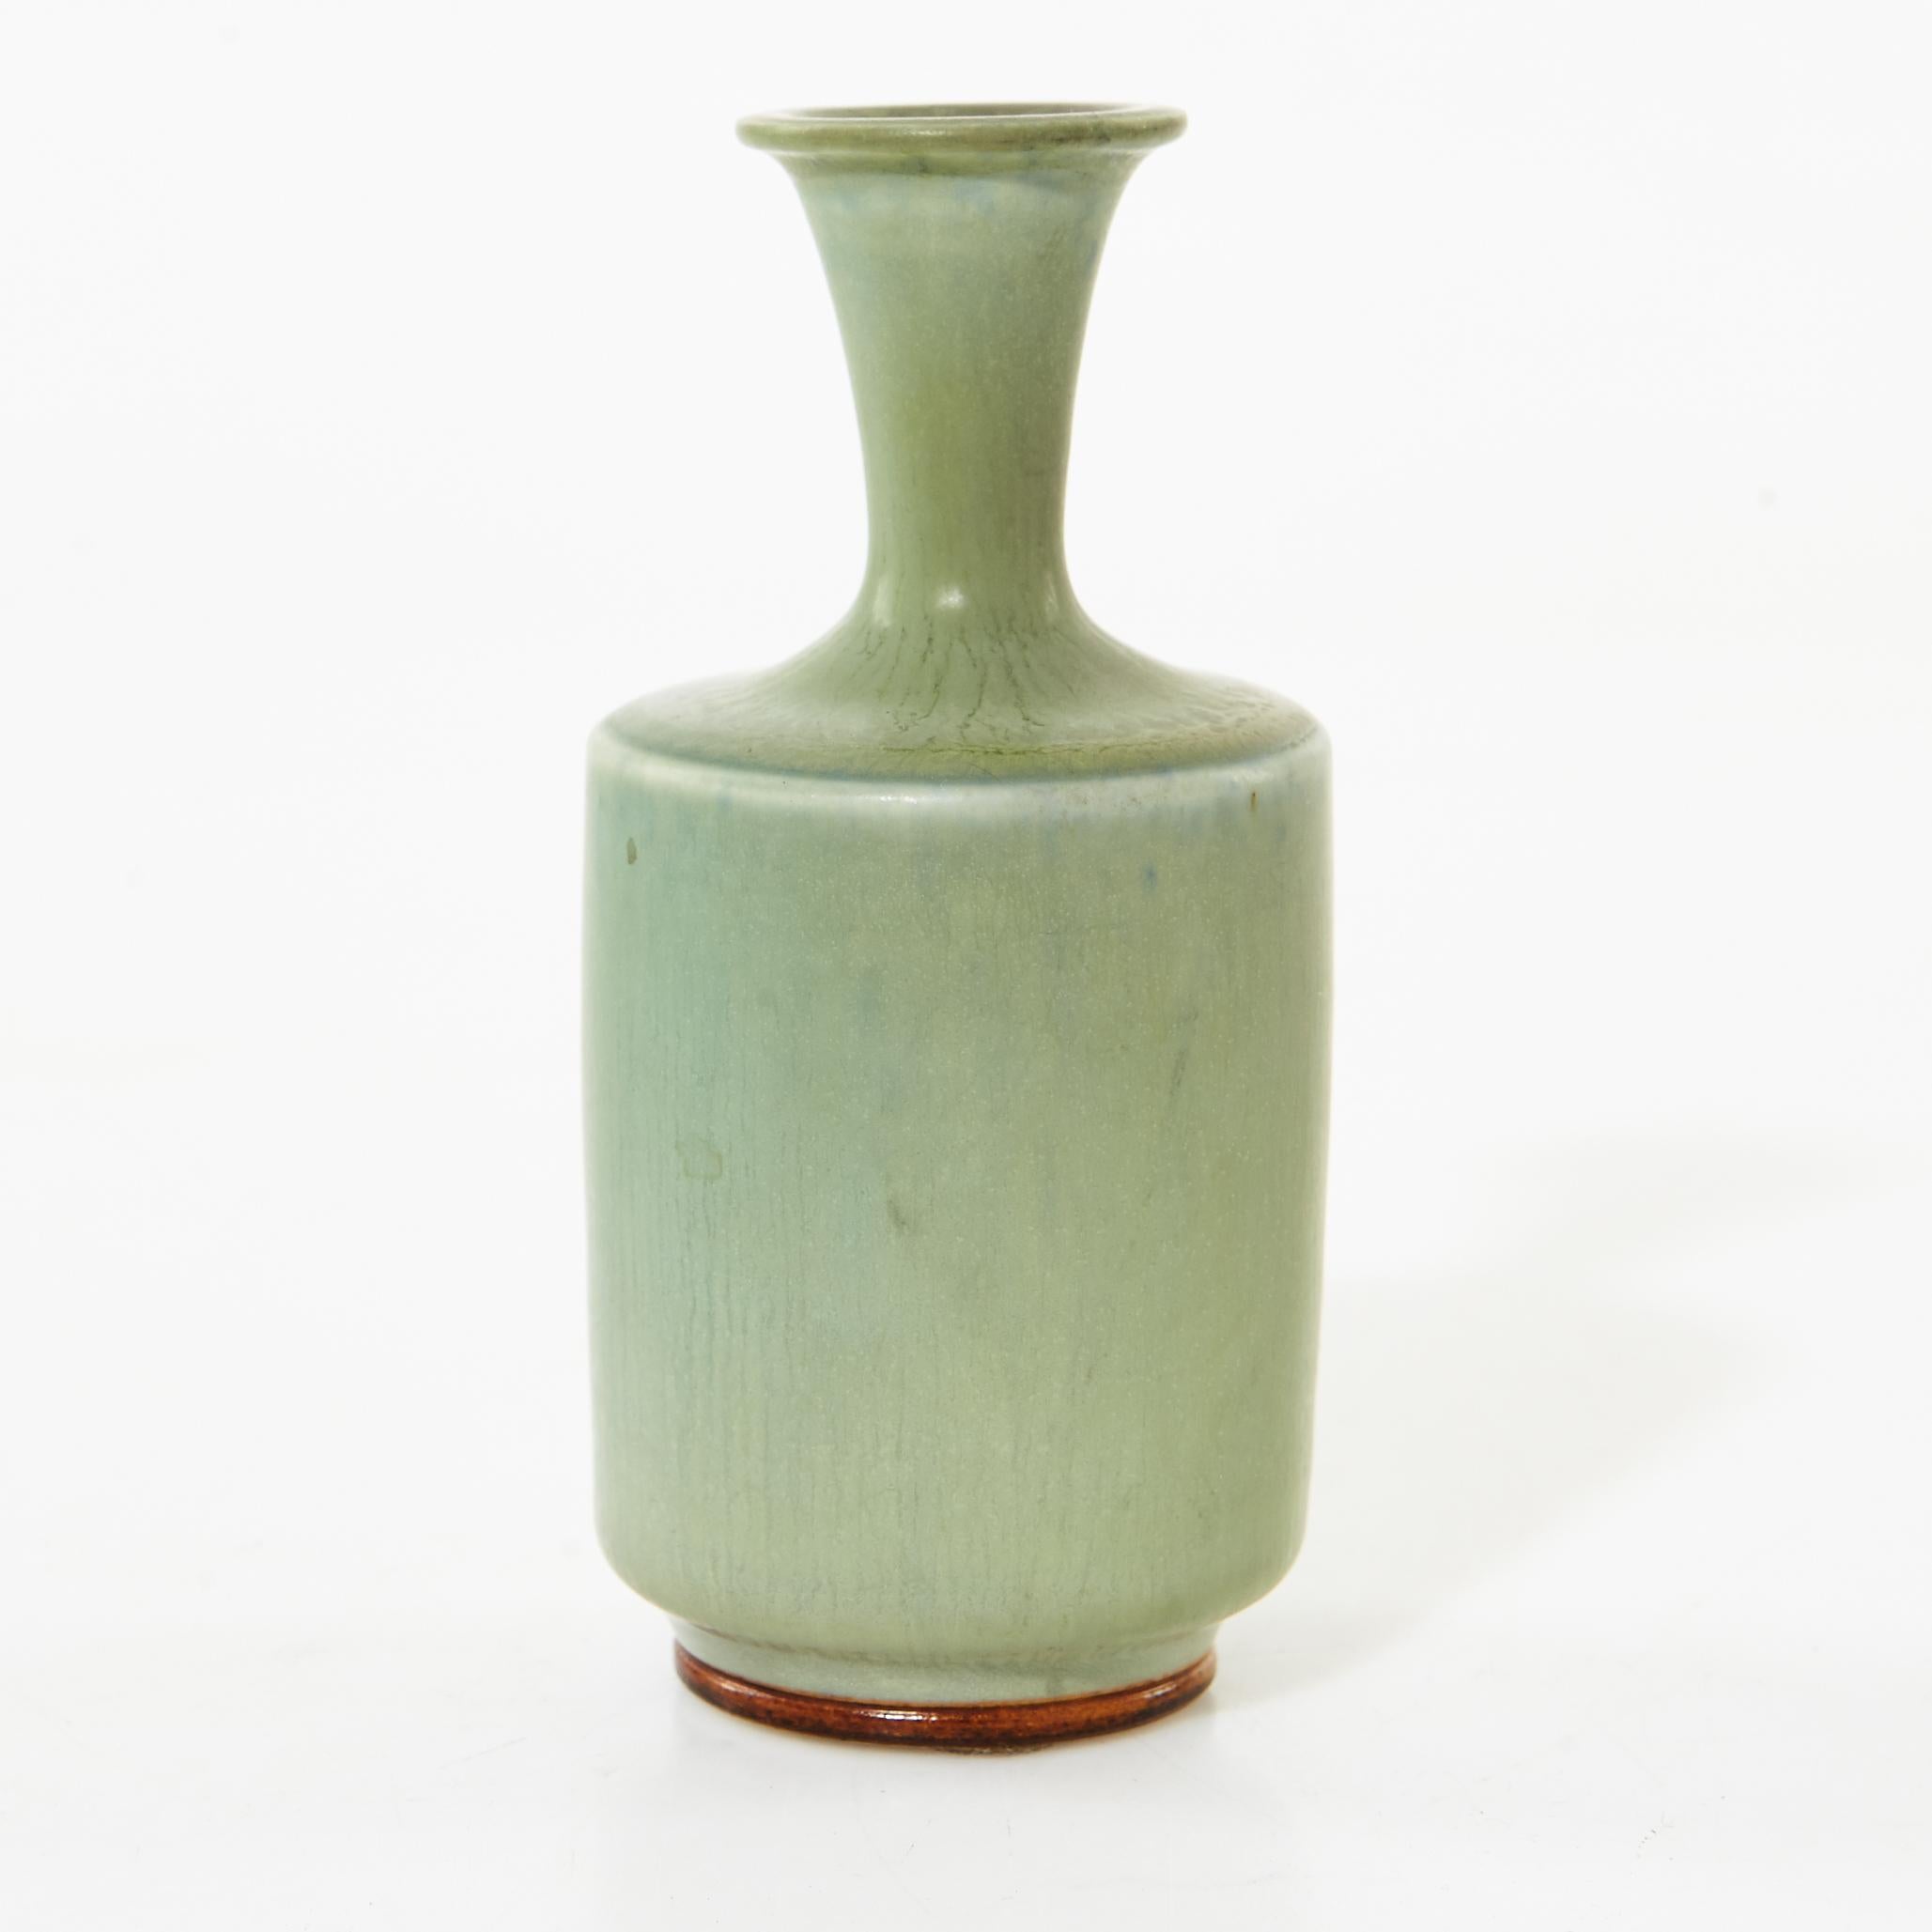 Vase en céramique de Berndt Friberg (1899-1981), design suédois moderne pour Gustavsberg.
Glace verte
Signé et avec des marques incisées. H 12 cm